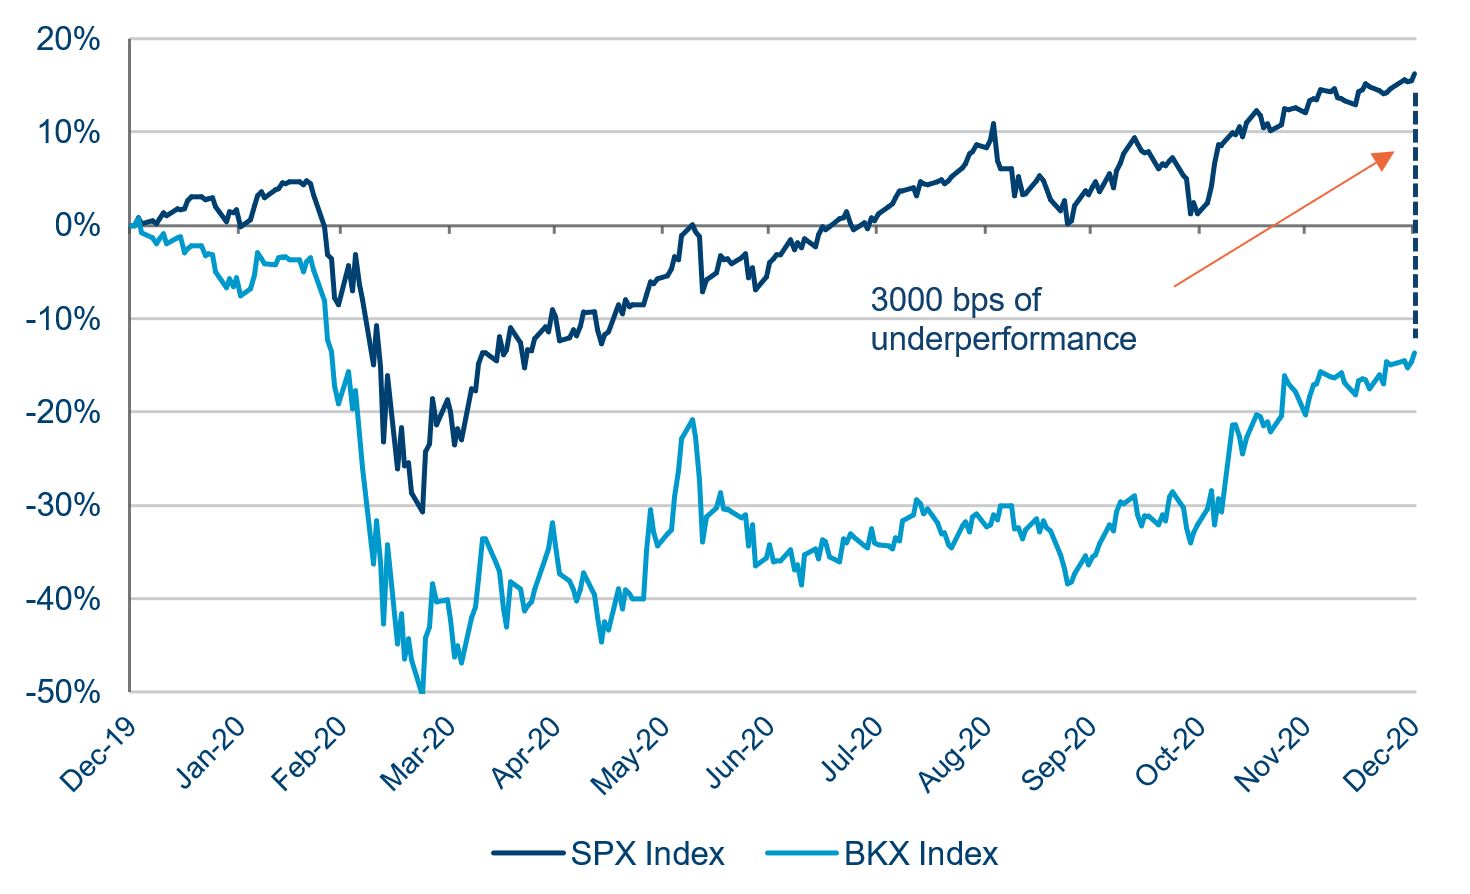 S&P500 vs KBW Bank Index in 2020